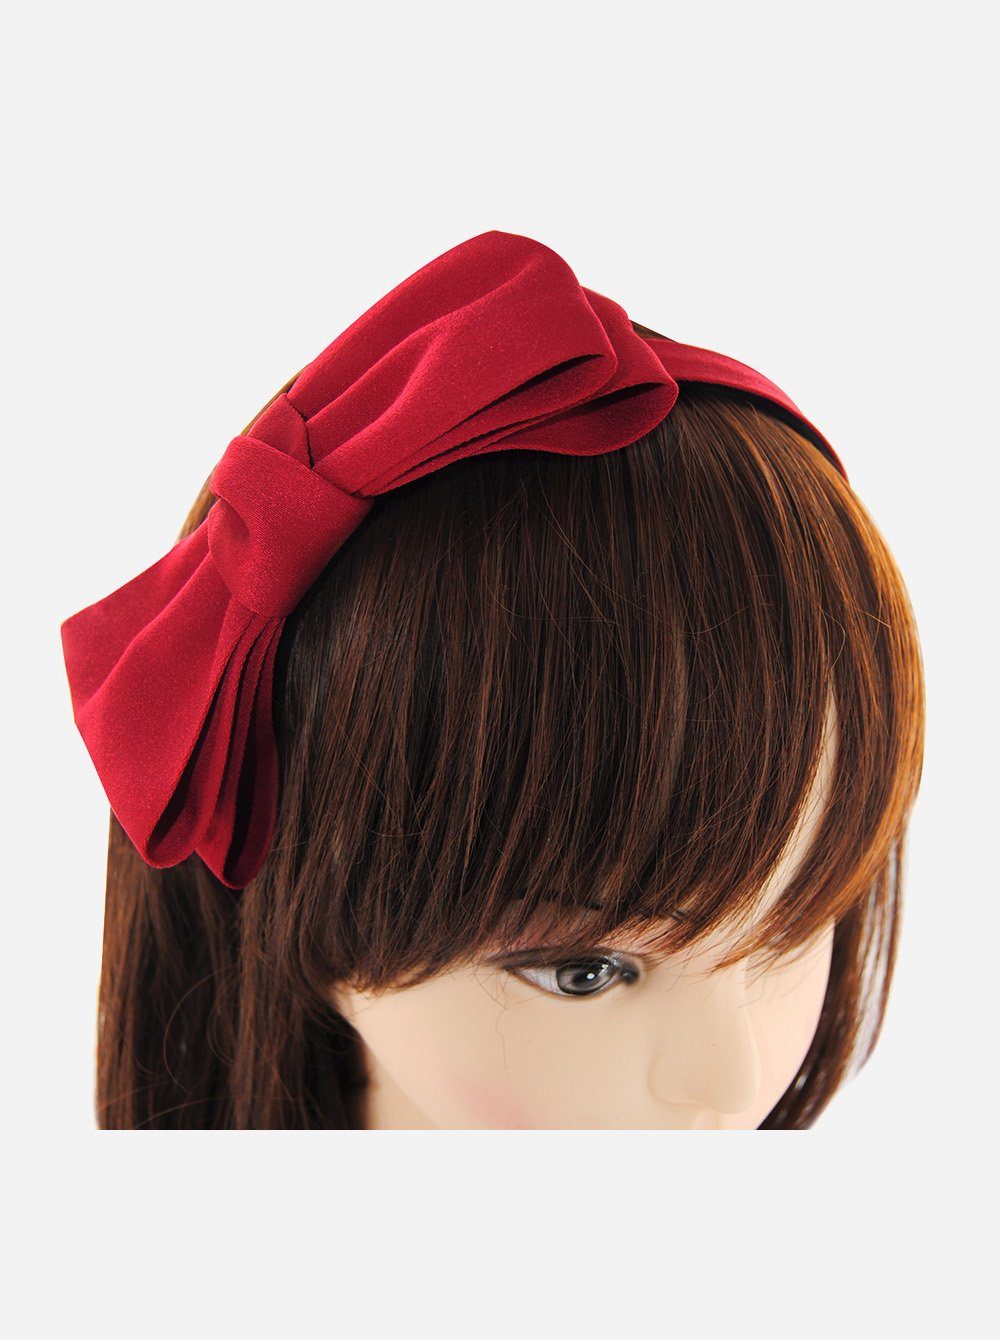 axy Haarreif Haarreif mit große Schleife 14 cm x 7 cm, Damen Haareifen Haarband Rot